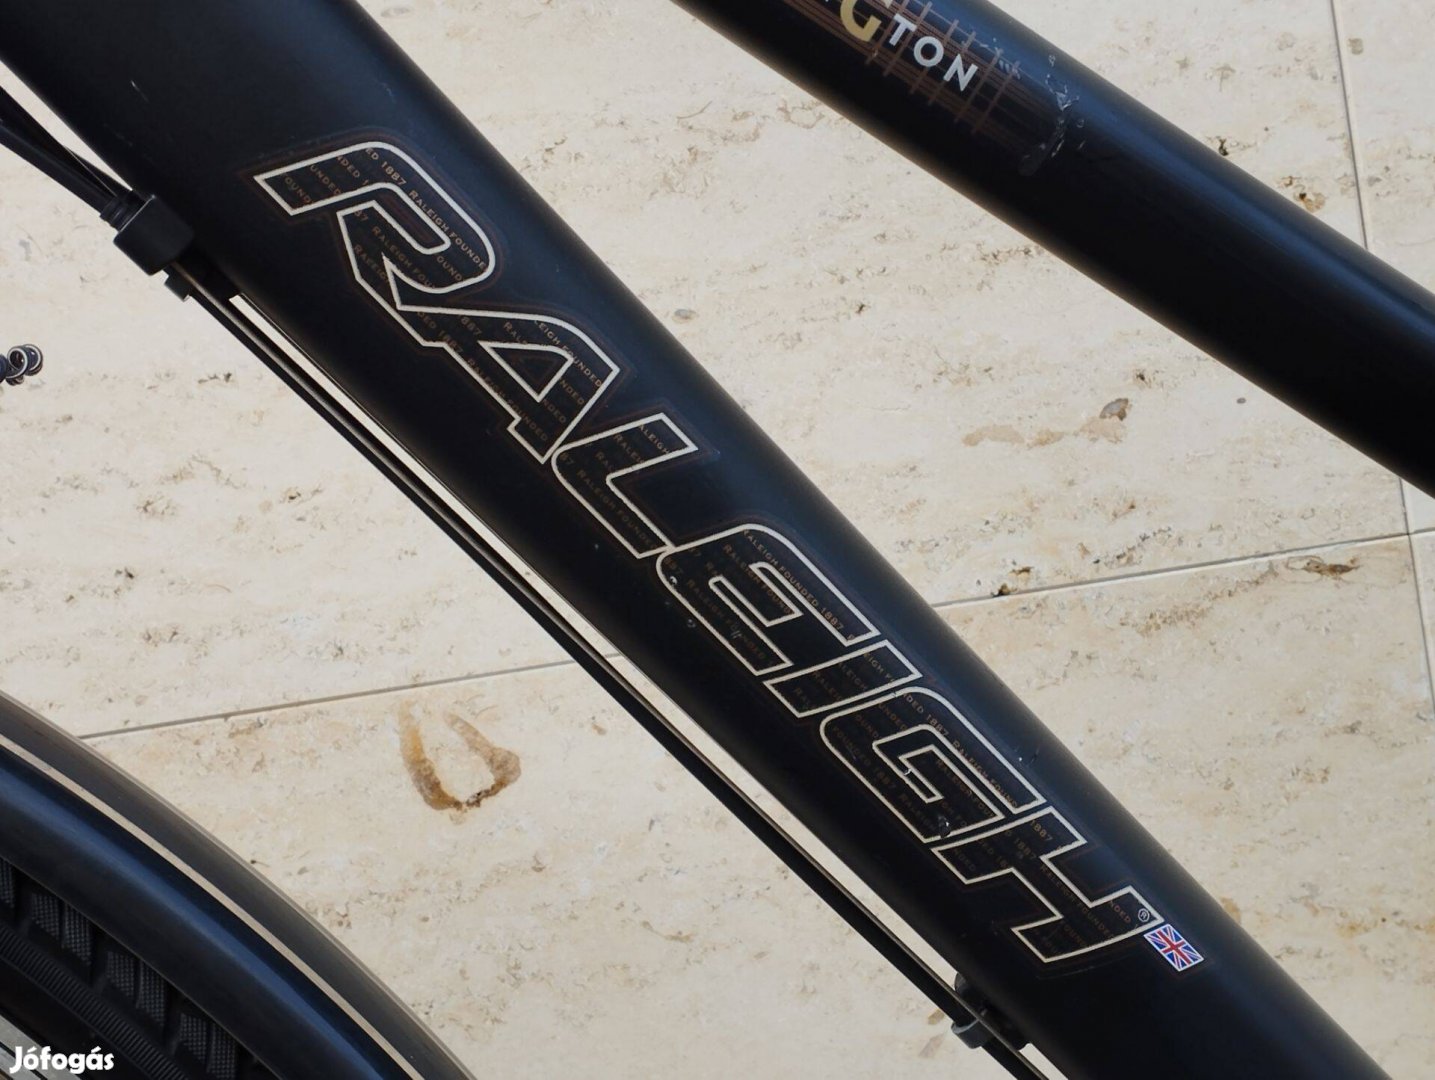 Raleigh Donnington Cross Trekking kerékpár jó állapotú, újszerű gumik